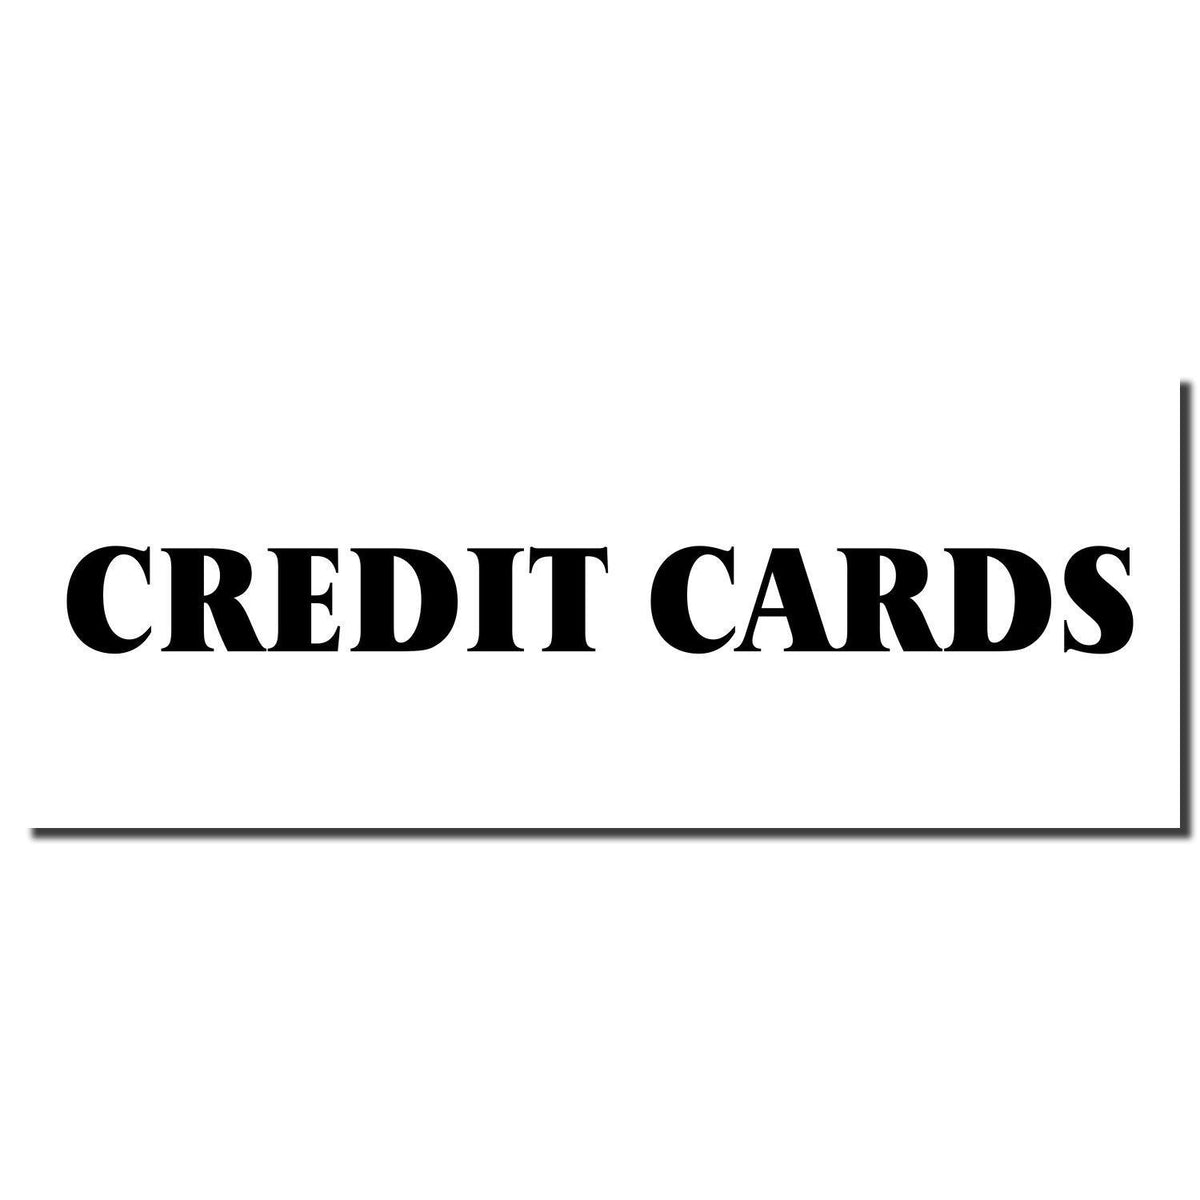 Enlarged Imprint Credit Cards Rubber Stamp Sample